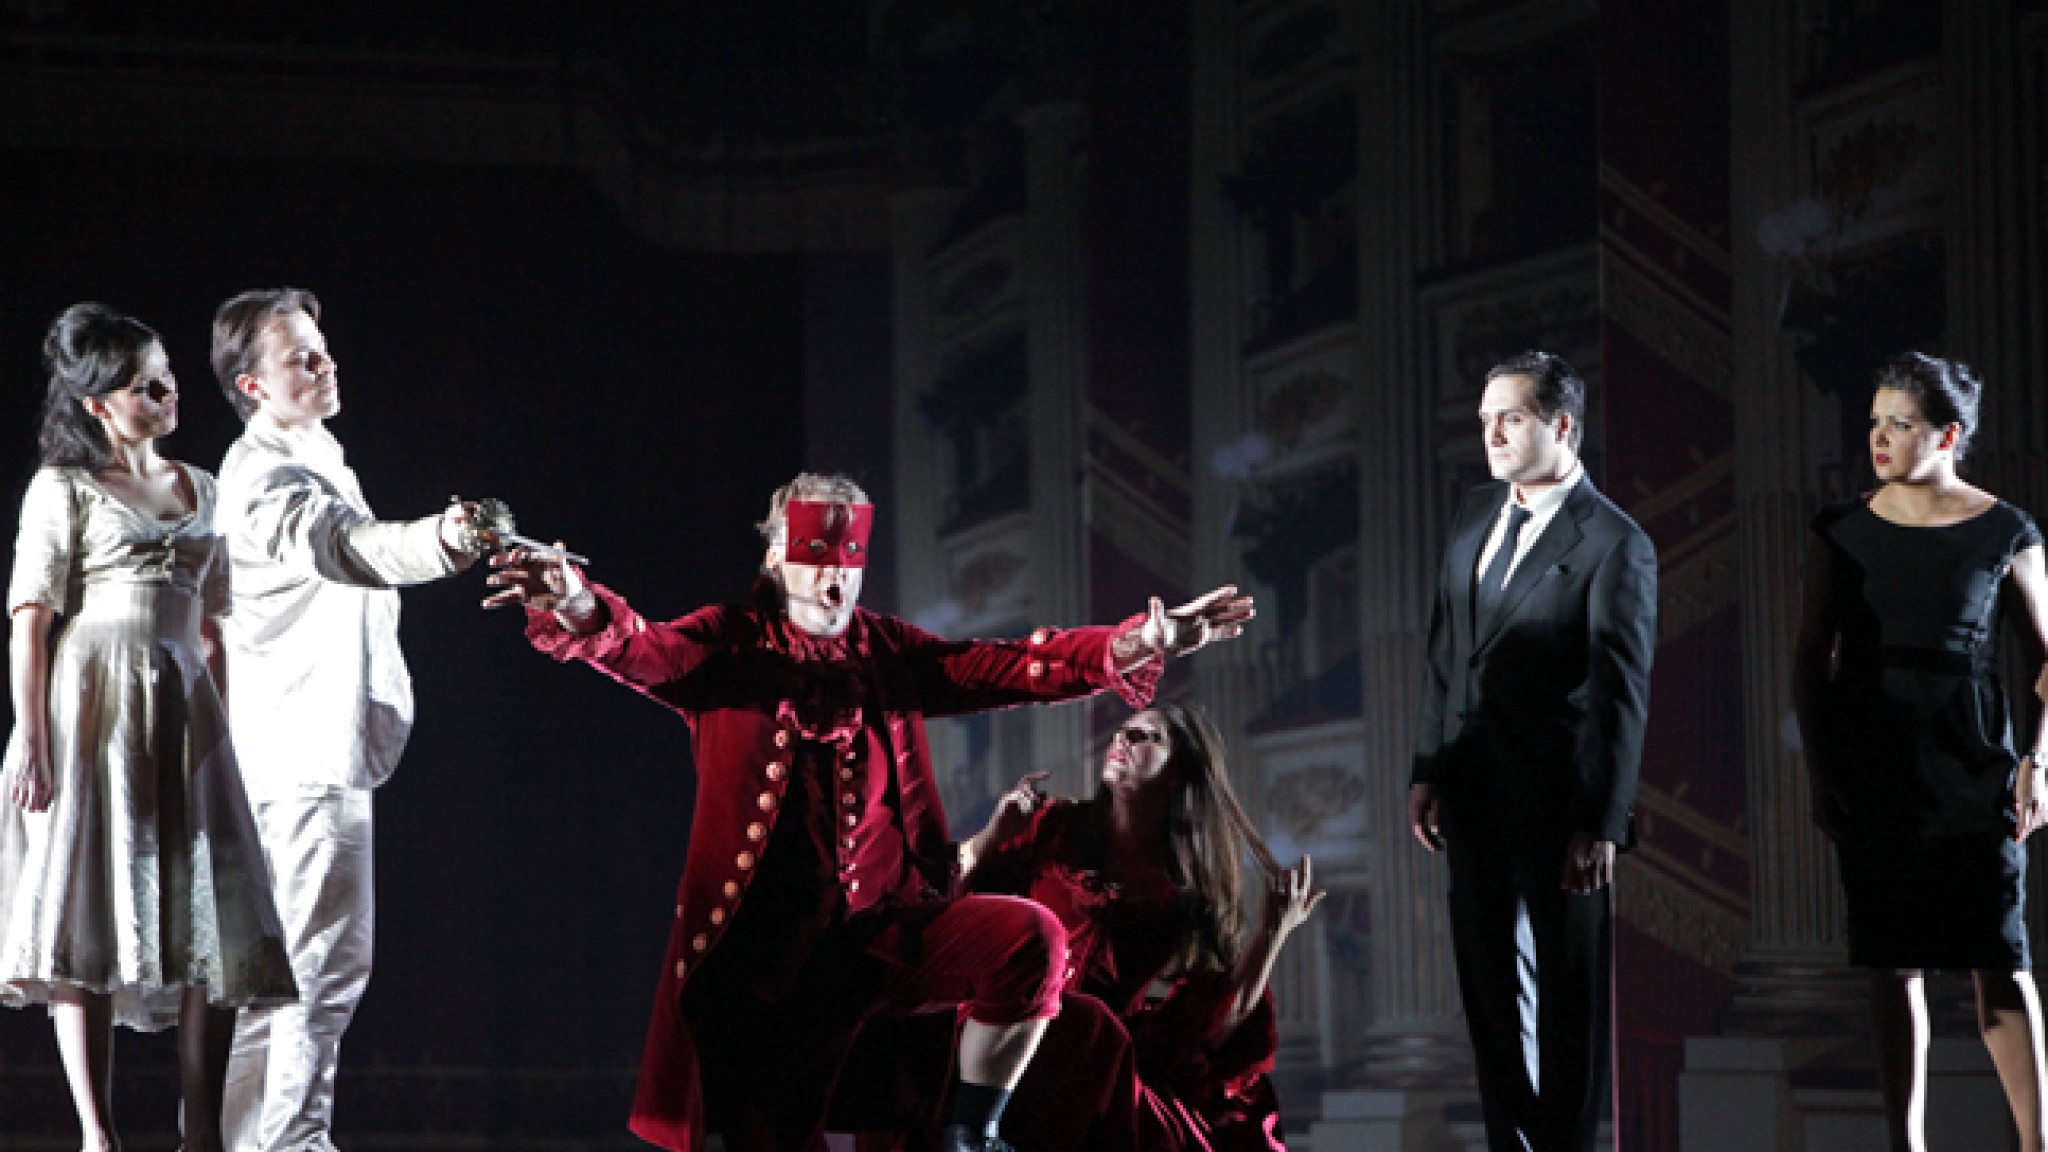 Umjubelter Saisonauftakt an der Mailänder Scala mit “Don Giovanni”